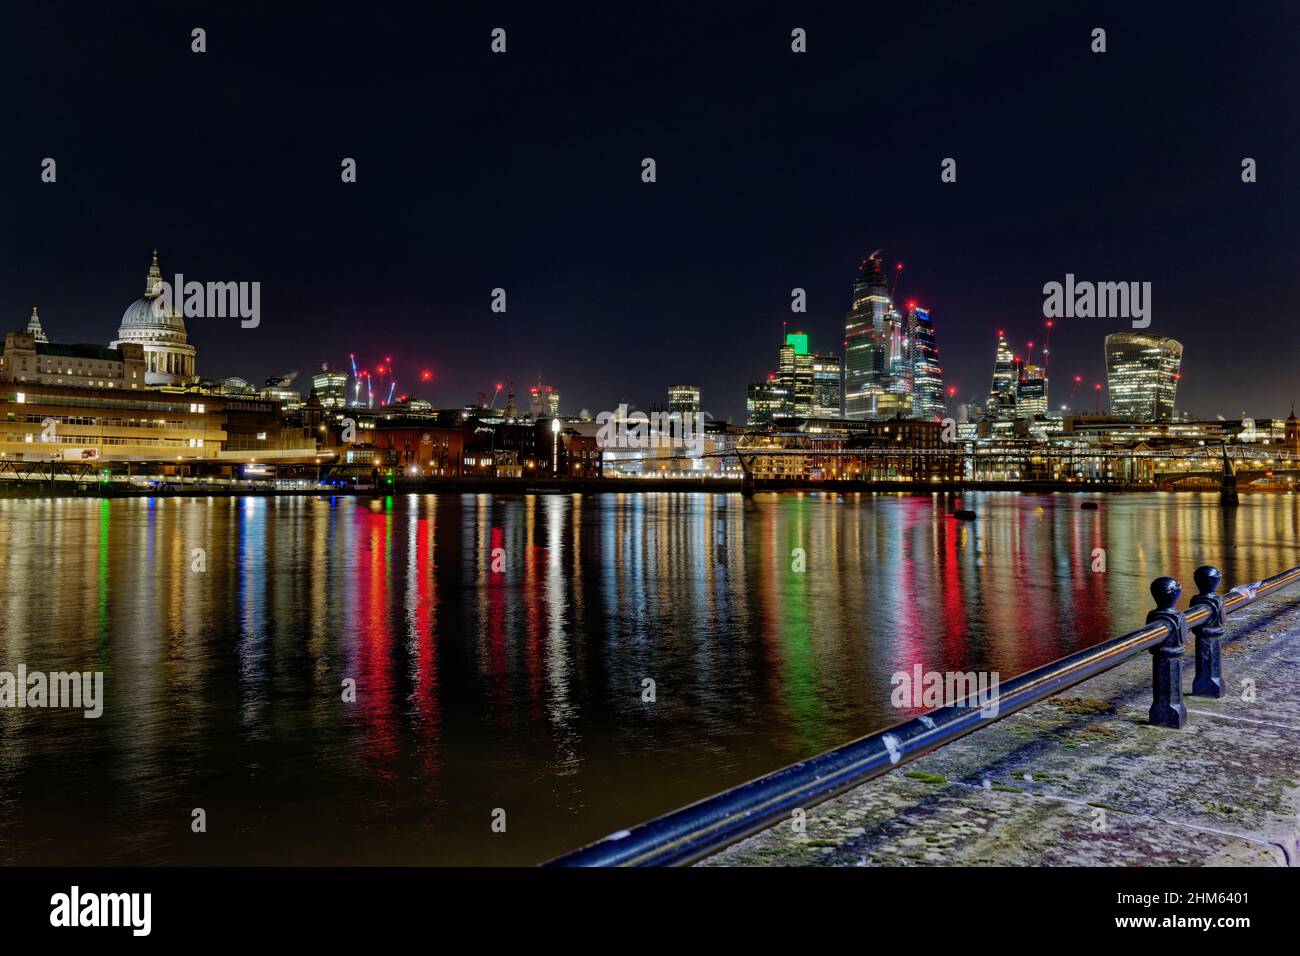 Farbenfrohe Reflexionen in der Themse von den Lichtern des Londoner Finanzzentrums mit seinen verschiedenen Wolkenkratzern, die die Nacht erleuchten Stockfoto